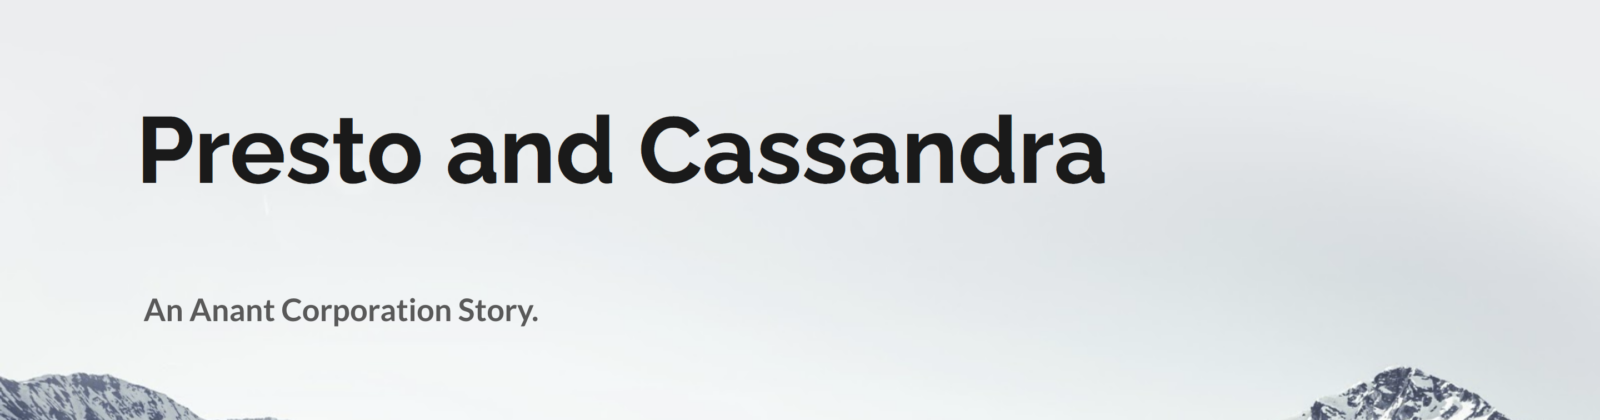 presto and cassandra cover image